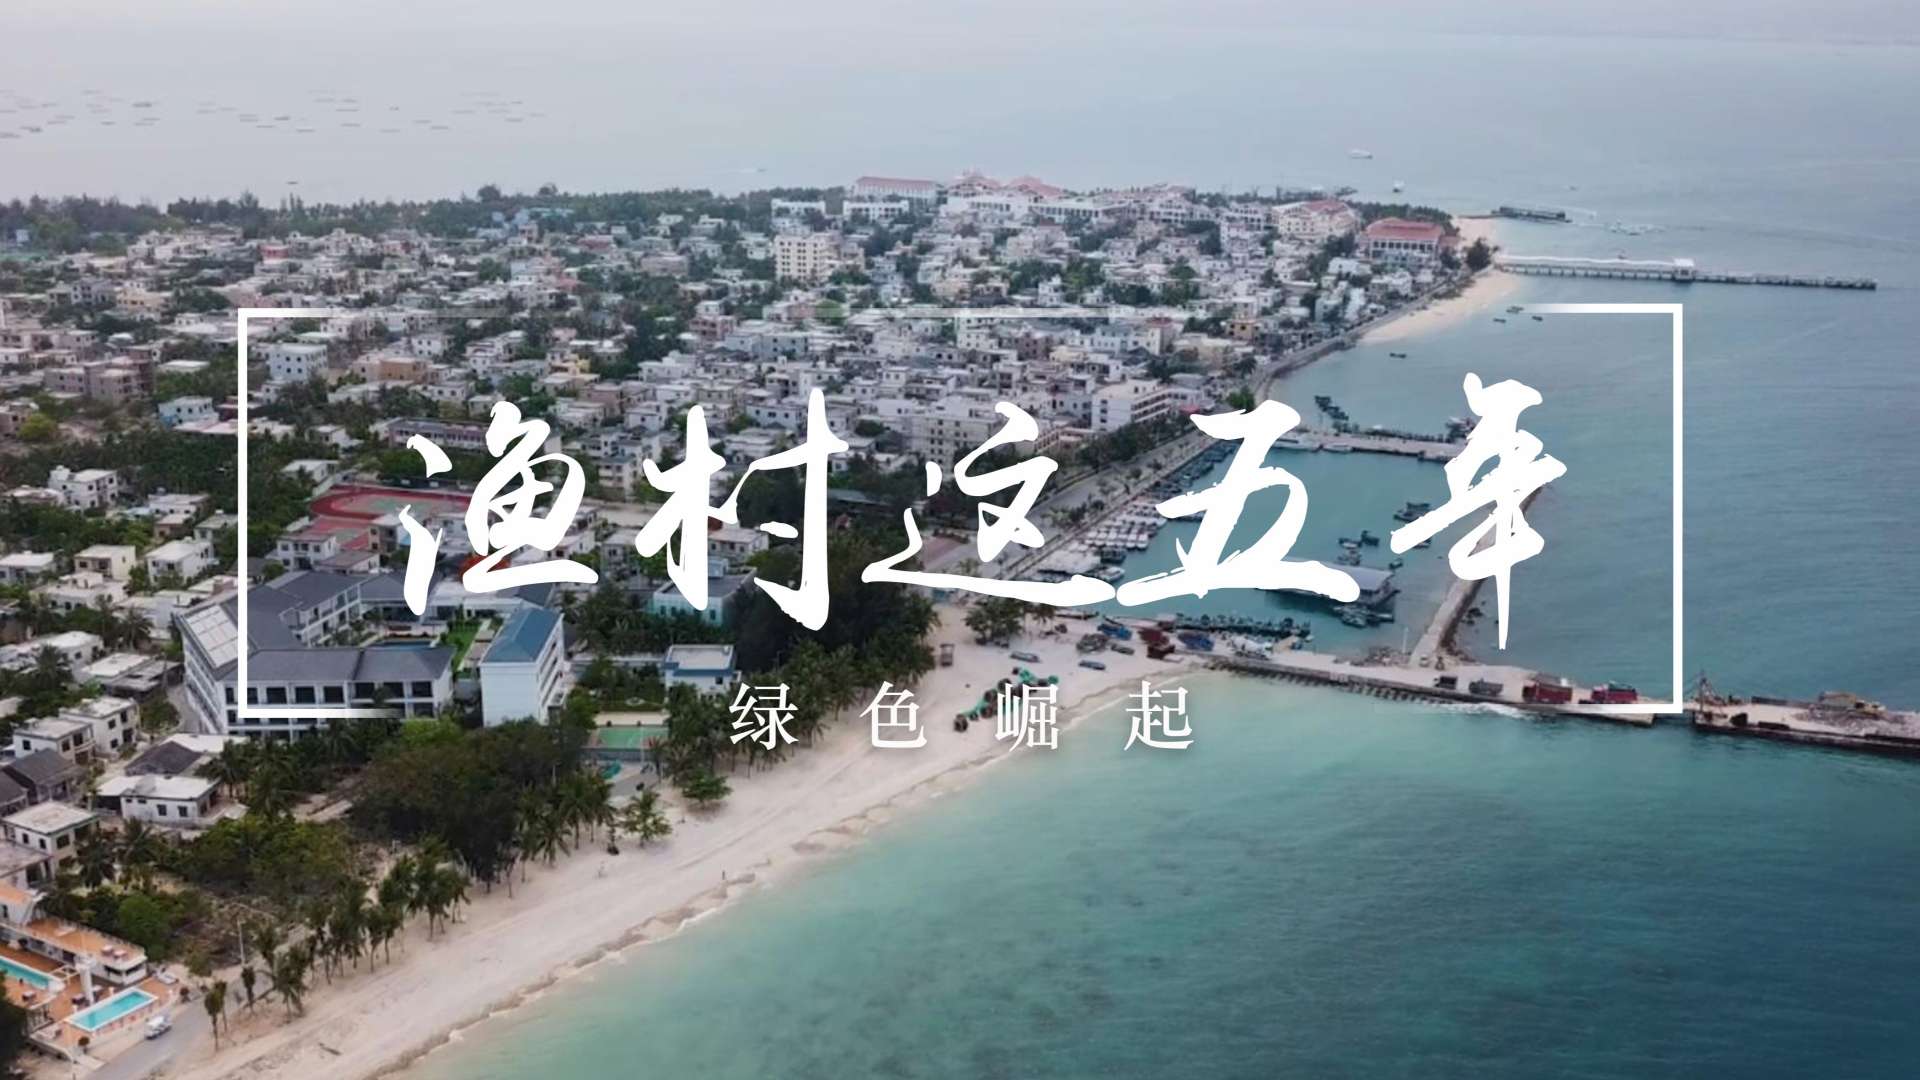 蓬岛藏影第六季《渔村这五年》预告